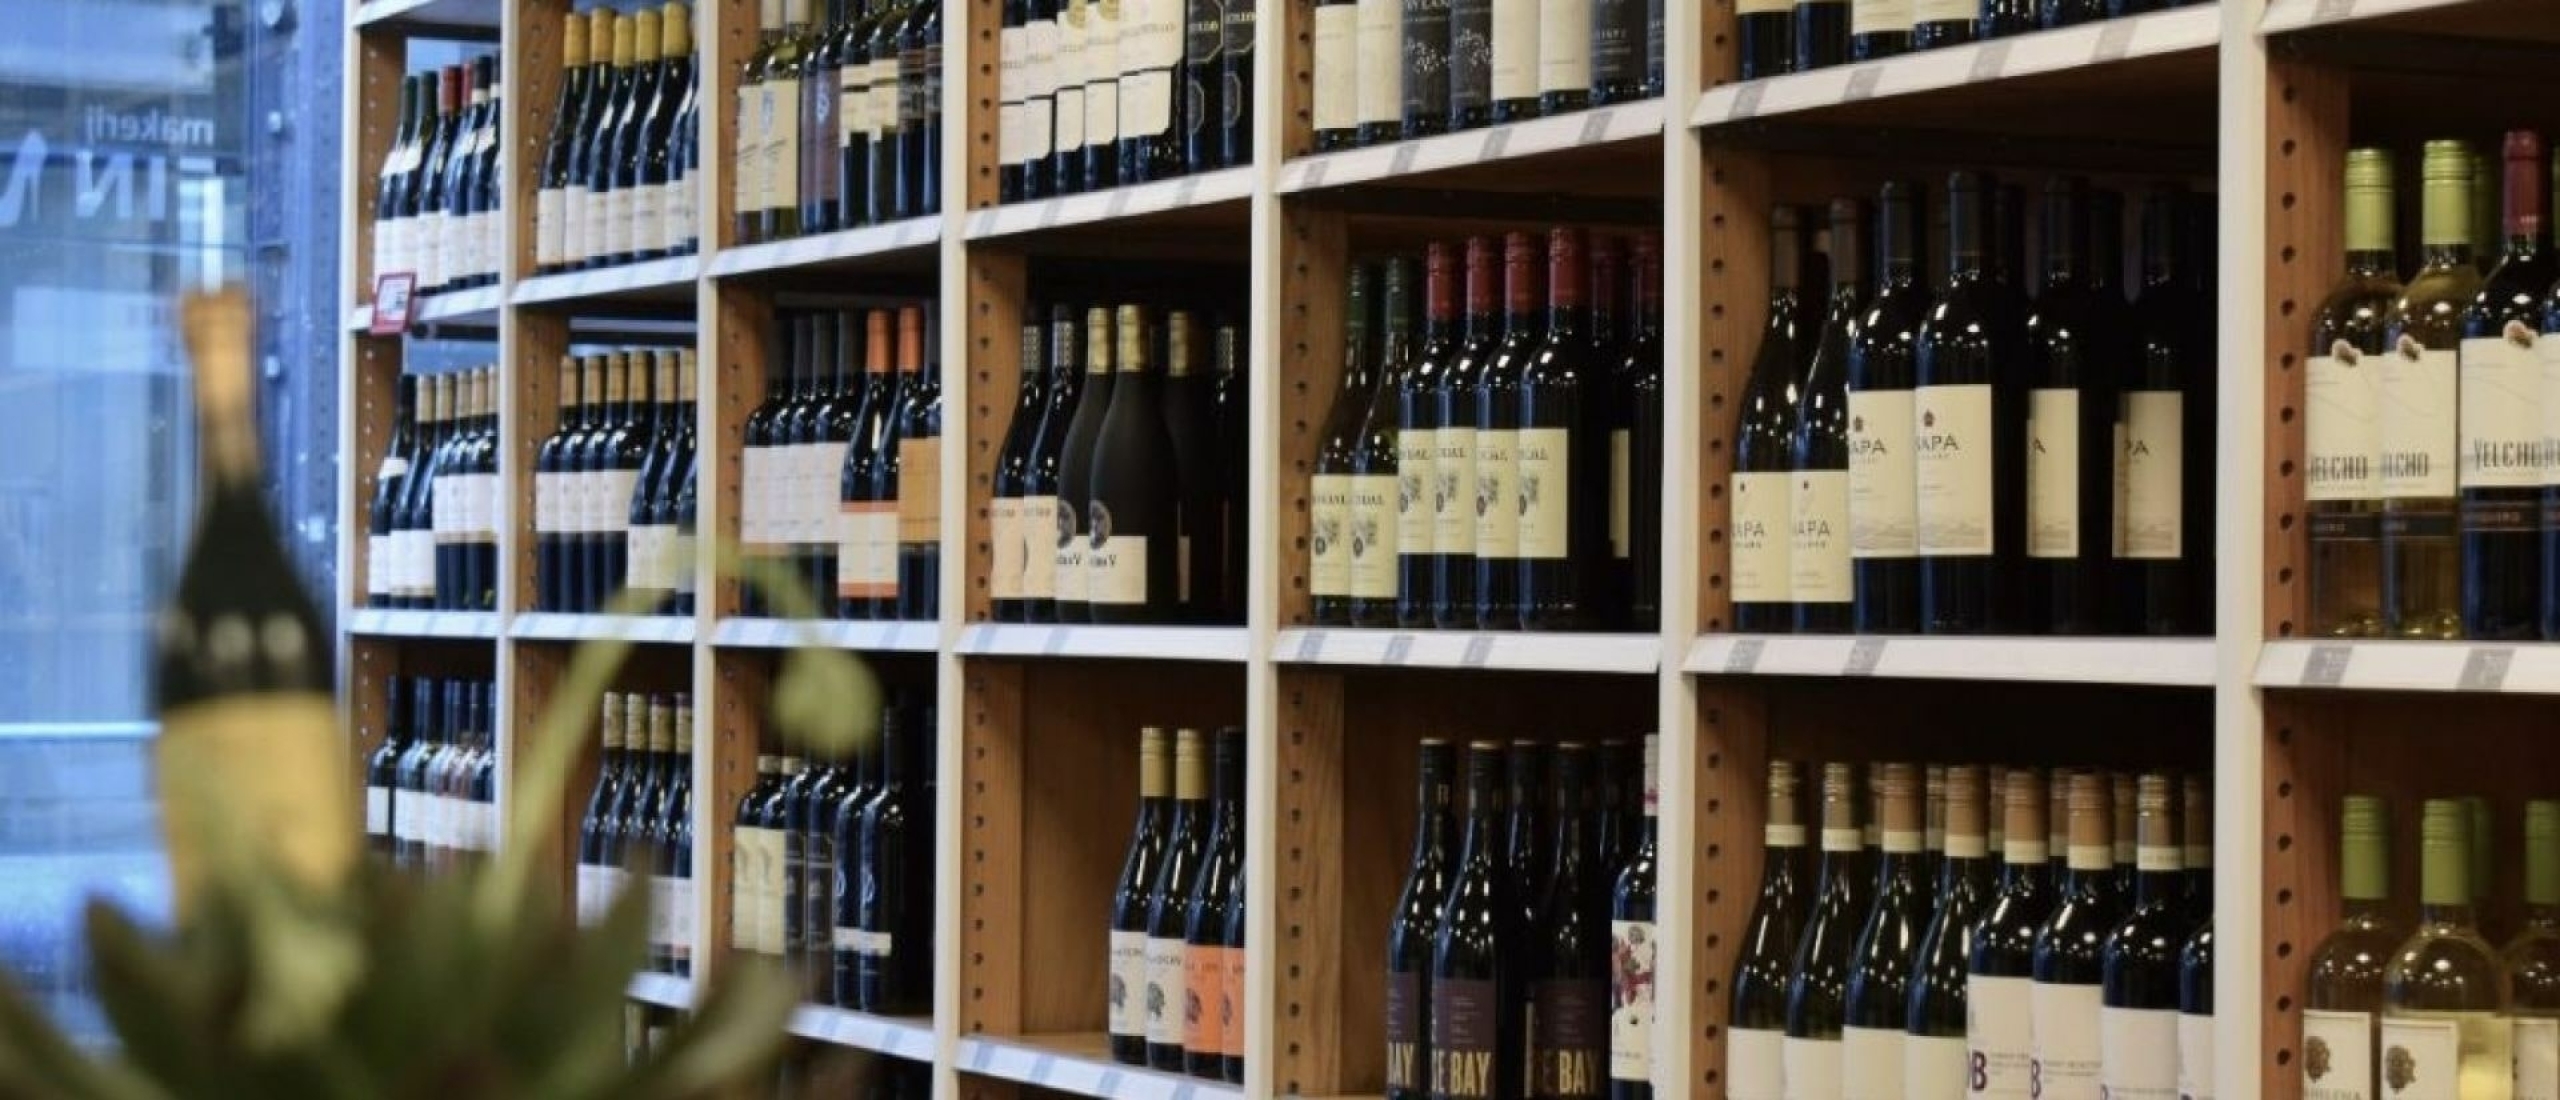 Hoe moet je eigenlijk een goede wijn kopen? 5 uitgebreide tips